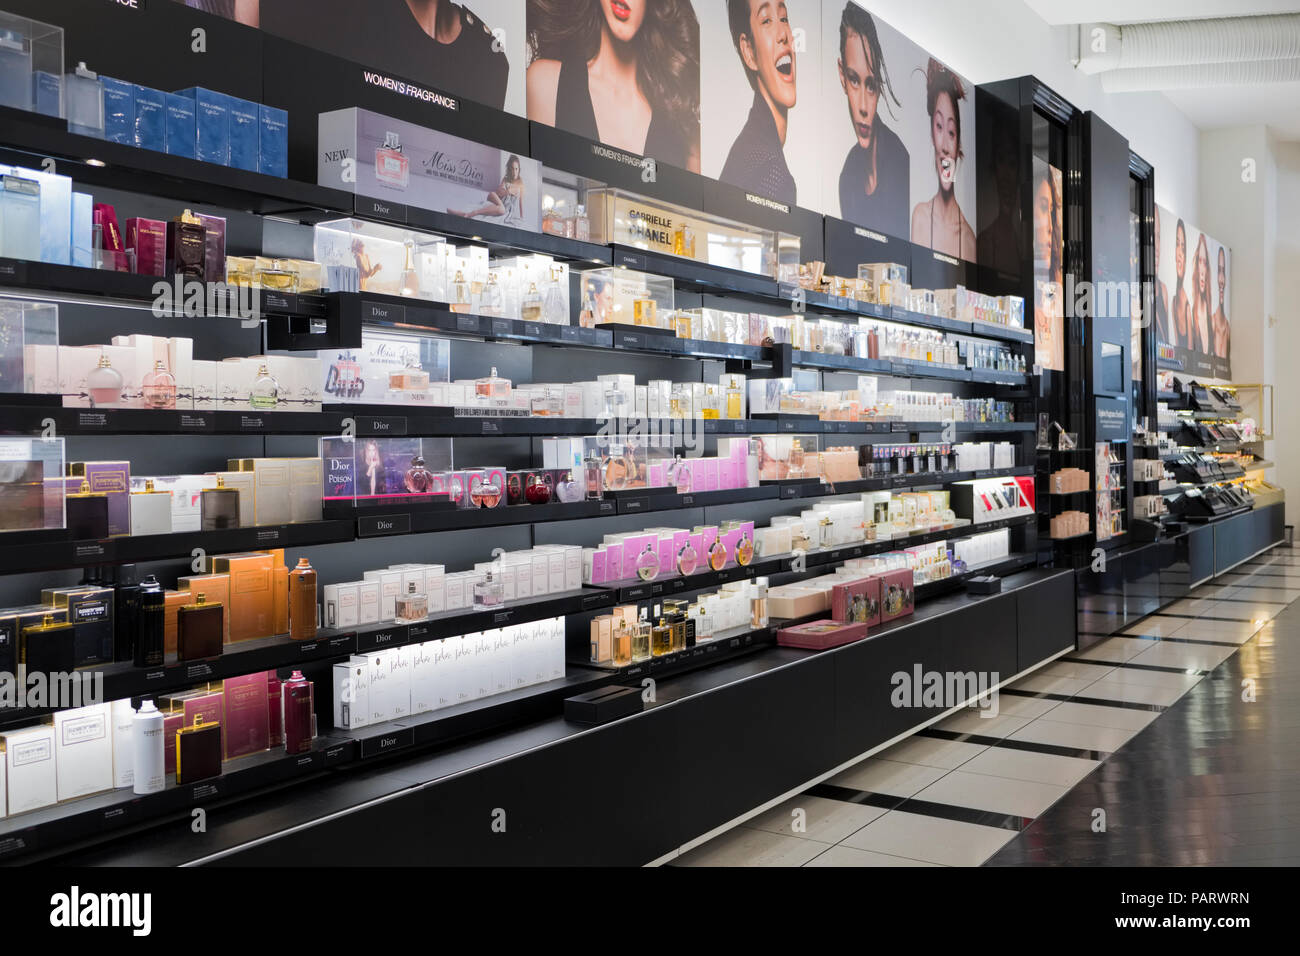 France, Paris , Sephora store on Avenue des Champs Elysees Stock Photo -  Alamy